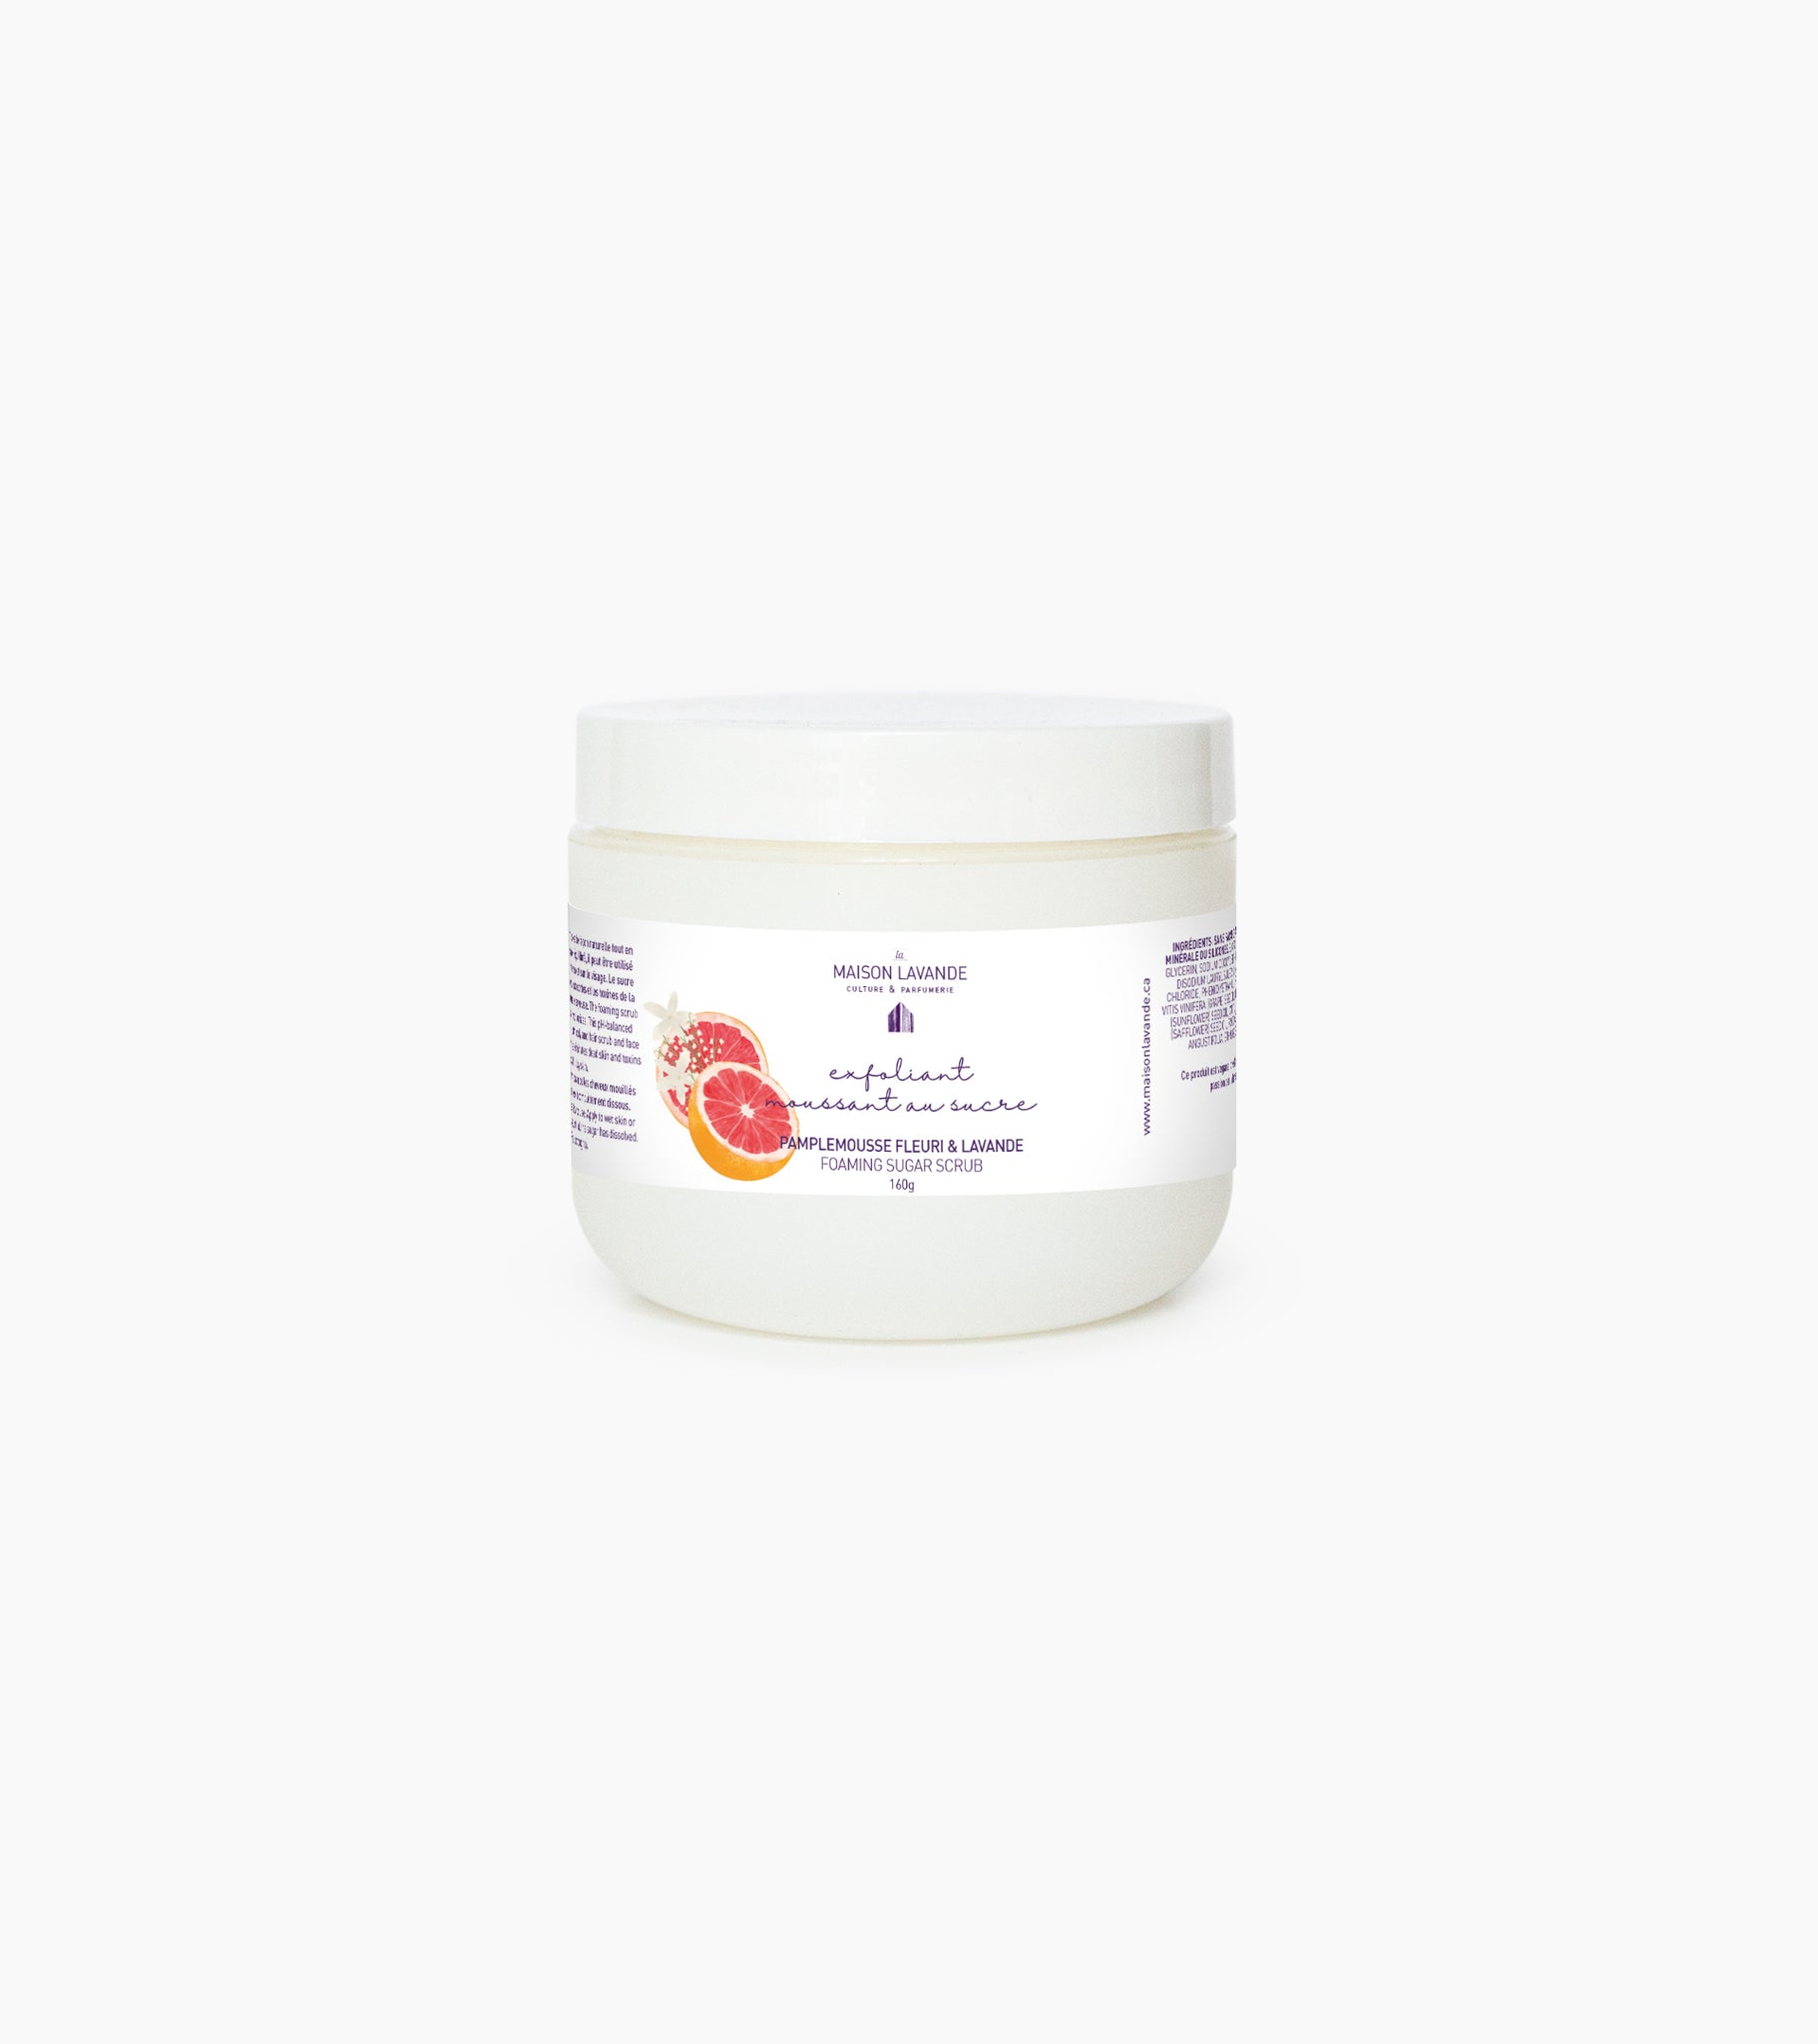 Exfoliant moussant - Pamplemousse fleuri & Lavande || Sugar scrub - Grapefruit blossom & Lavender